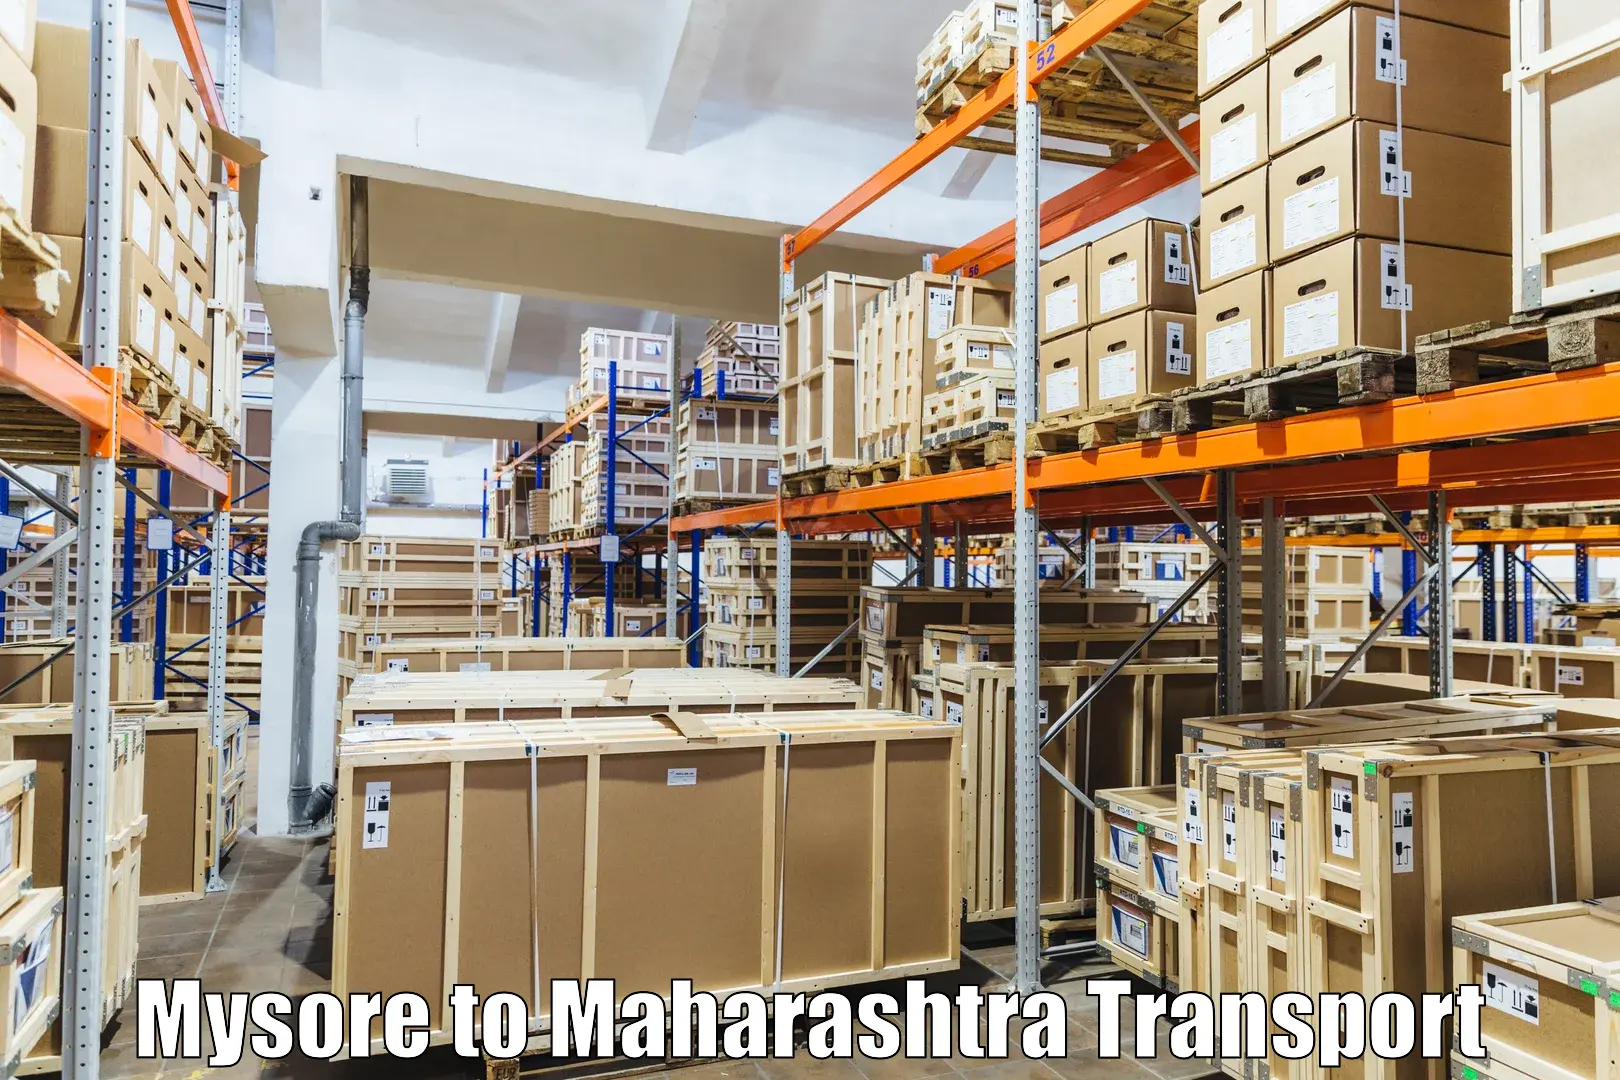 Transportation services Mysore to Raigarh Maharashtra